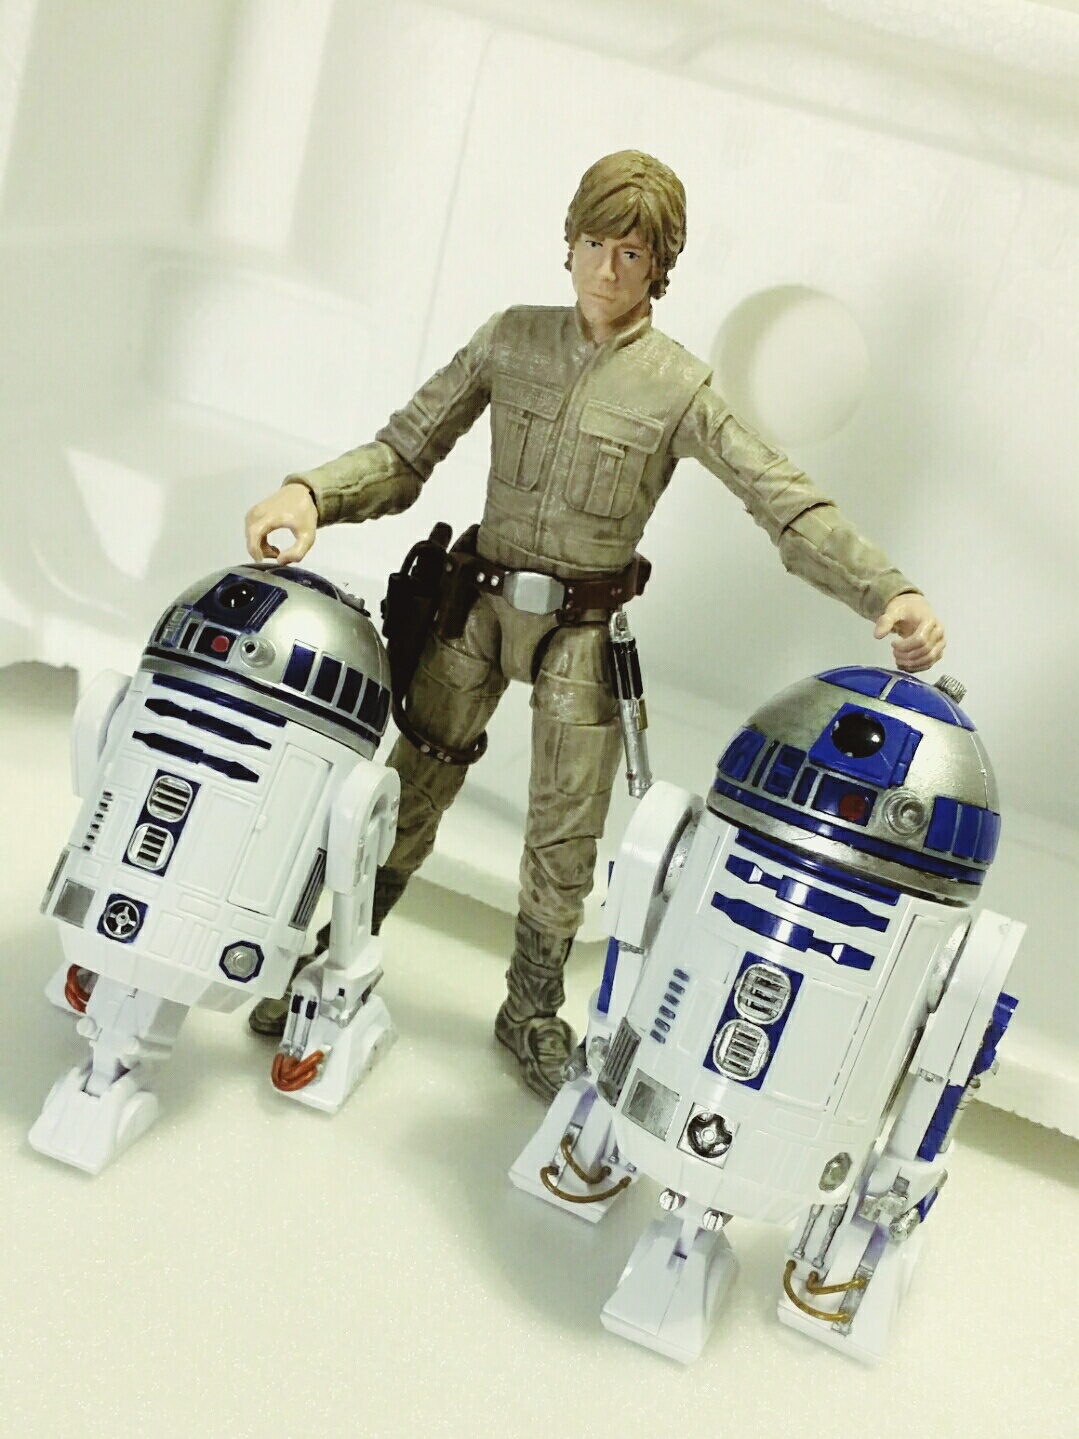 Bandai R2-D2 kit size comparisons against Hasbro's aThe Black Series figures